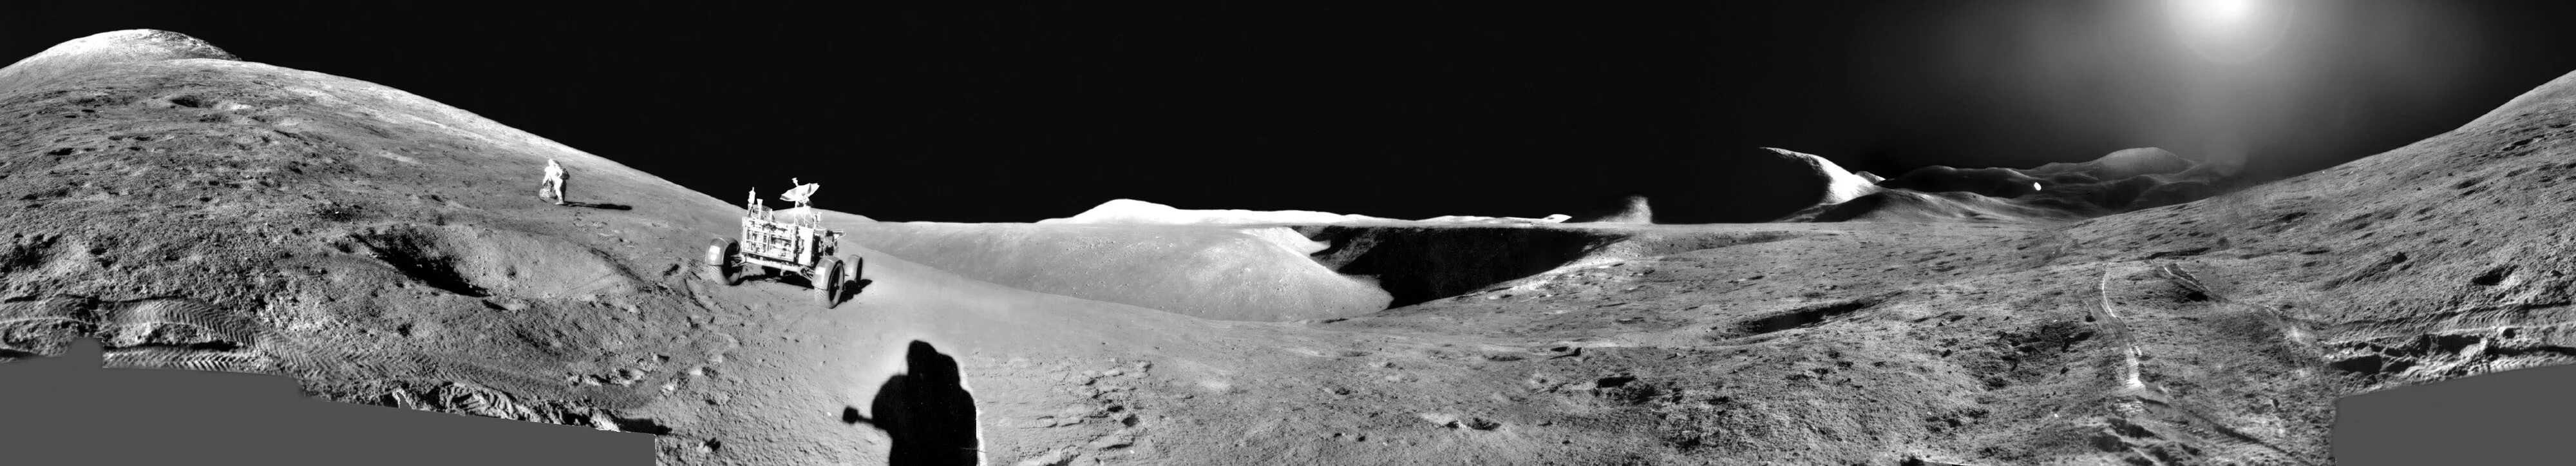 Стоя на поверхности луны. Аполлон 11 панорама Луны. Аполлон 15. Луноход Аполлон 15. Аполлон 15 на Луне.